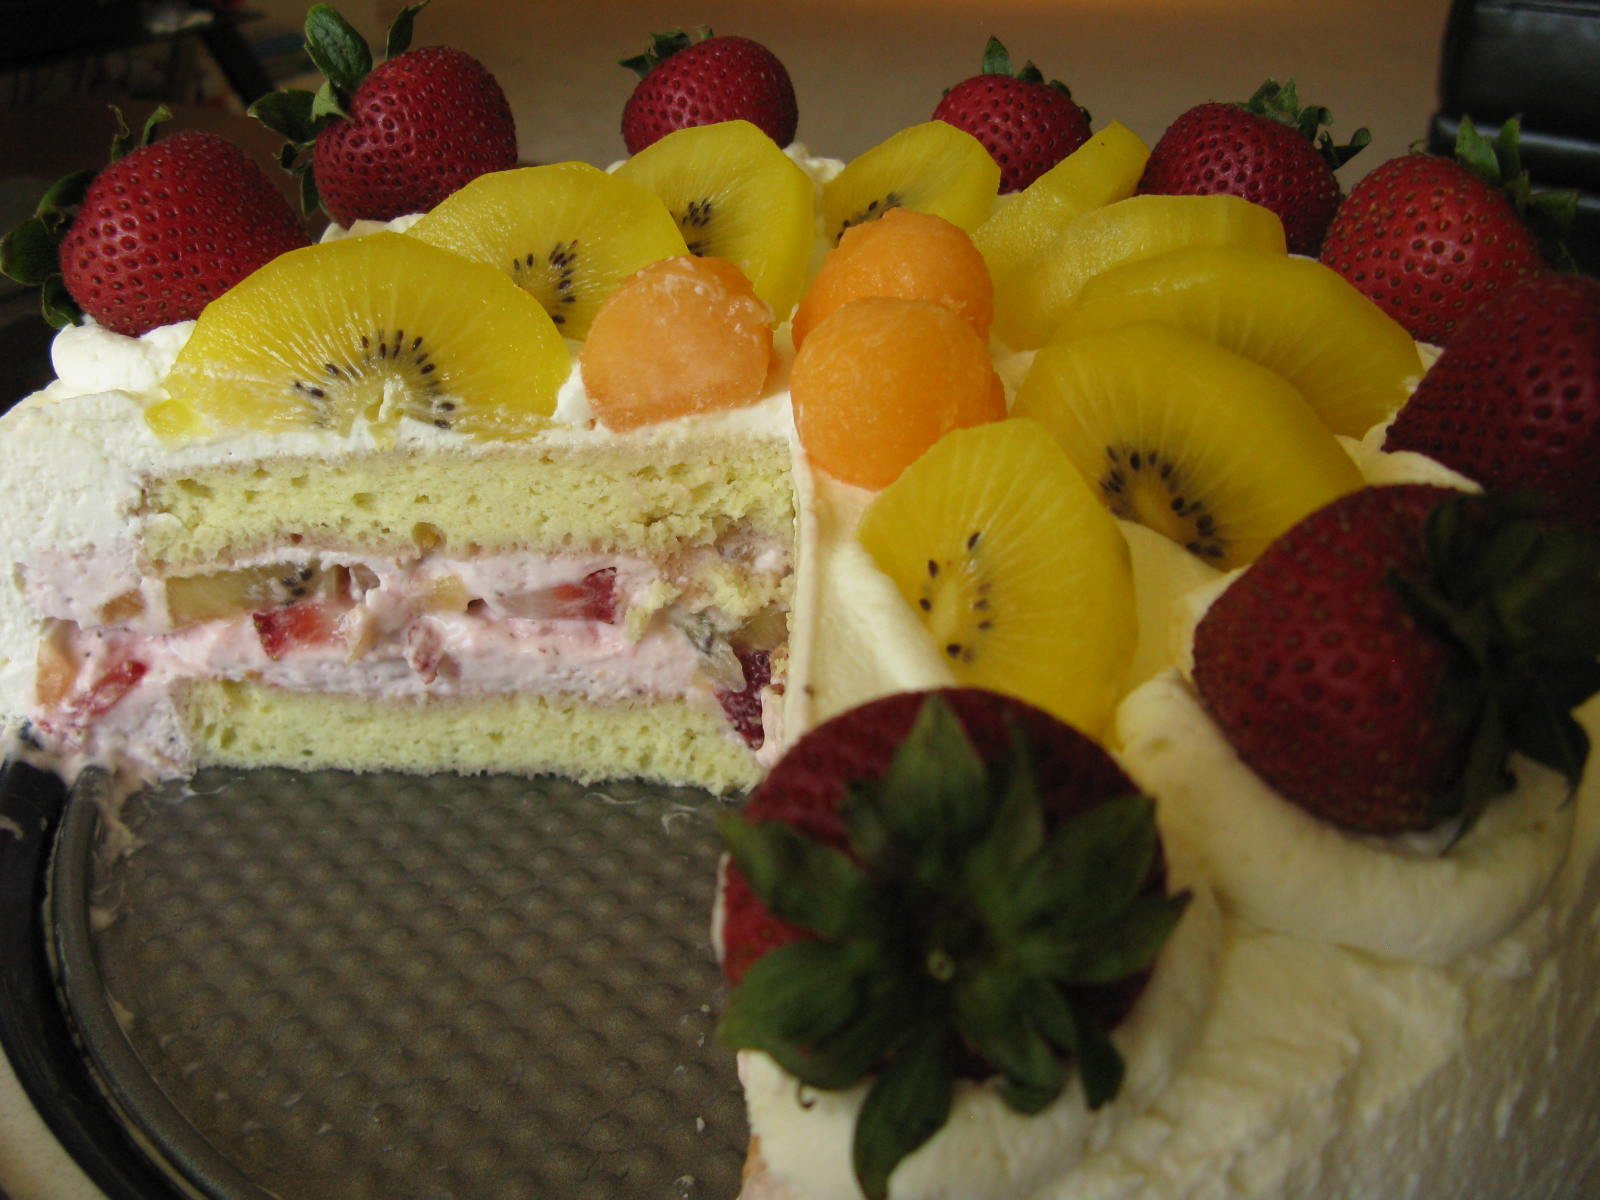 Chinese Birthday Cake Recipe
 Chinese birthday cream cake with strawberry mousse and